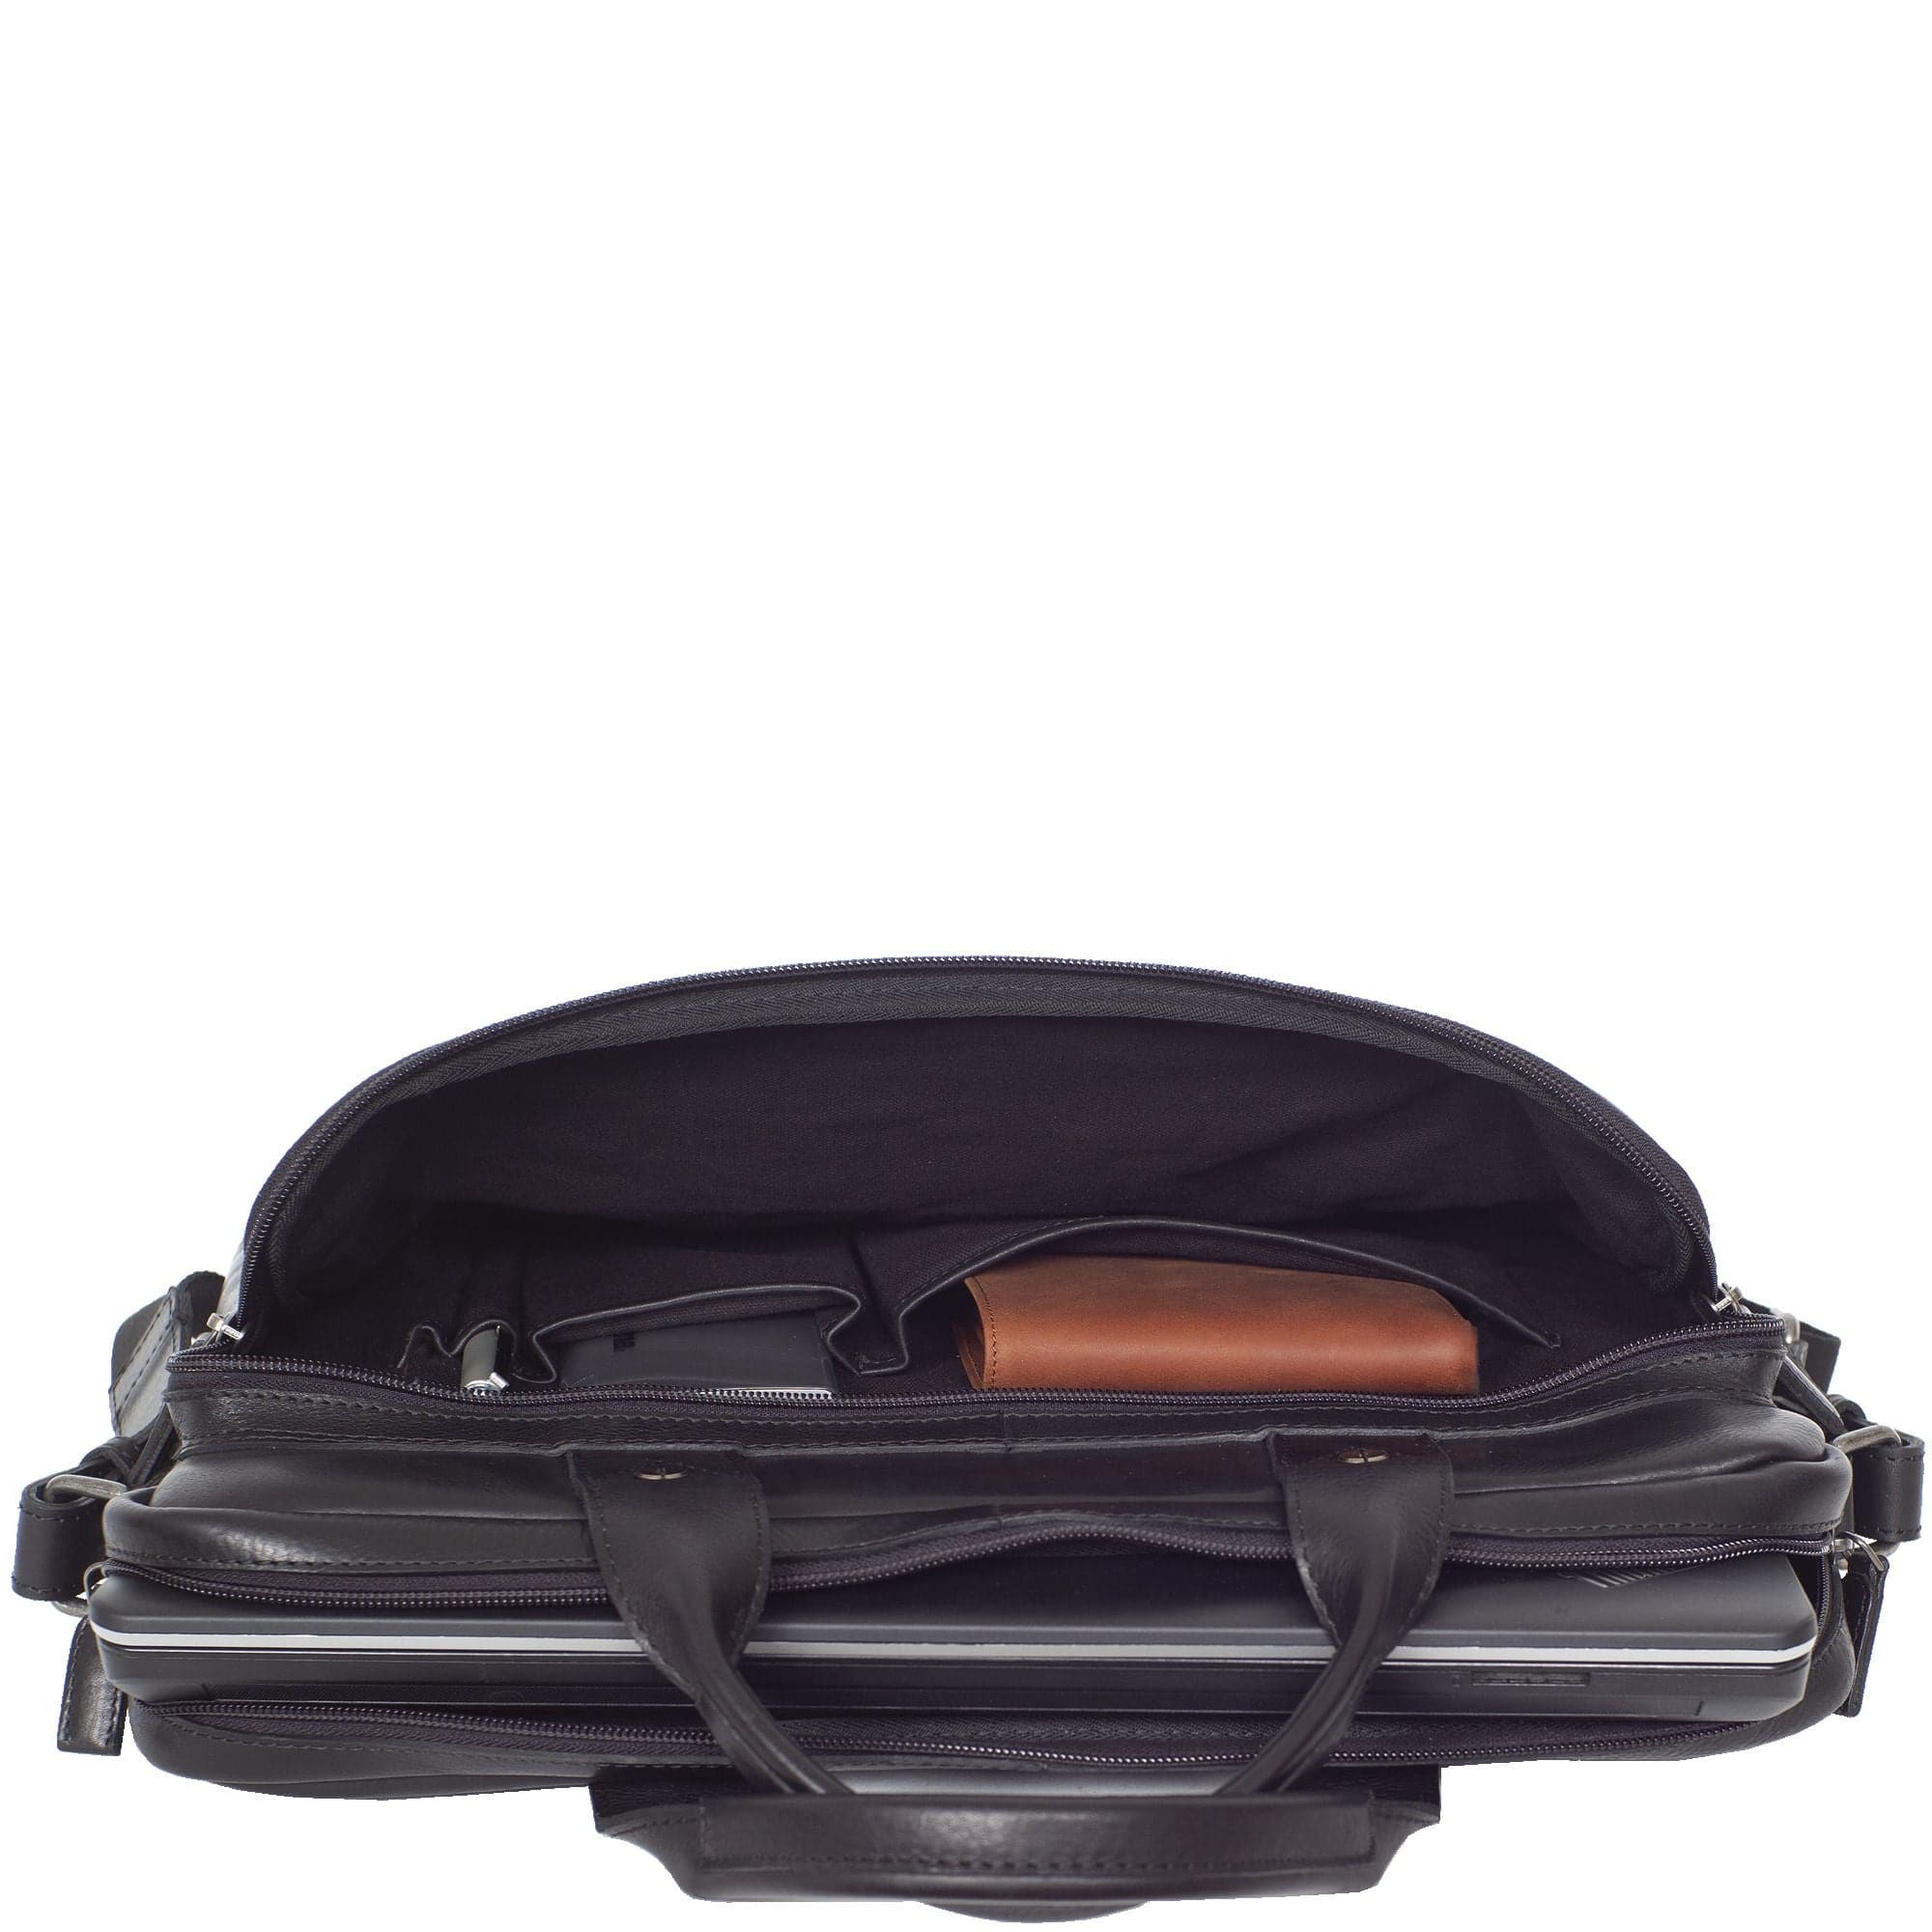 Businesstasche Laptoptasche 15 Zoll Glattleder schwarz Vortasche mit Boden